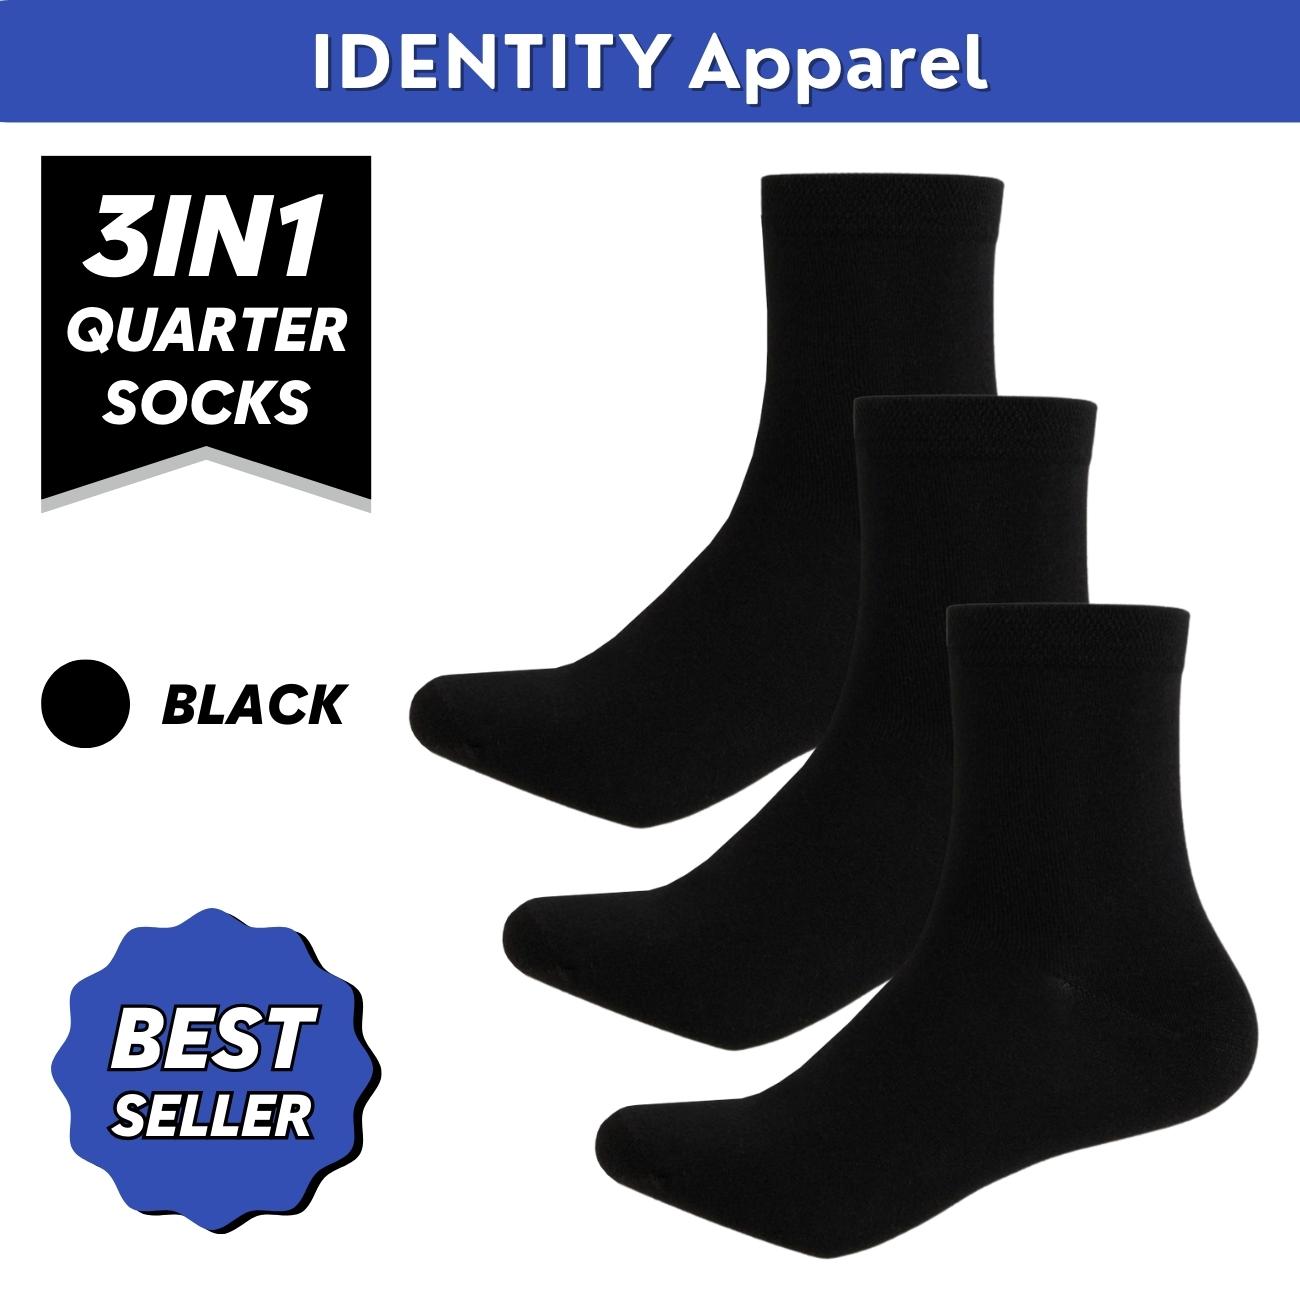 Basic Plain Quarter Length Cotton Socks